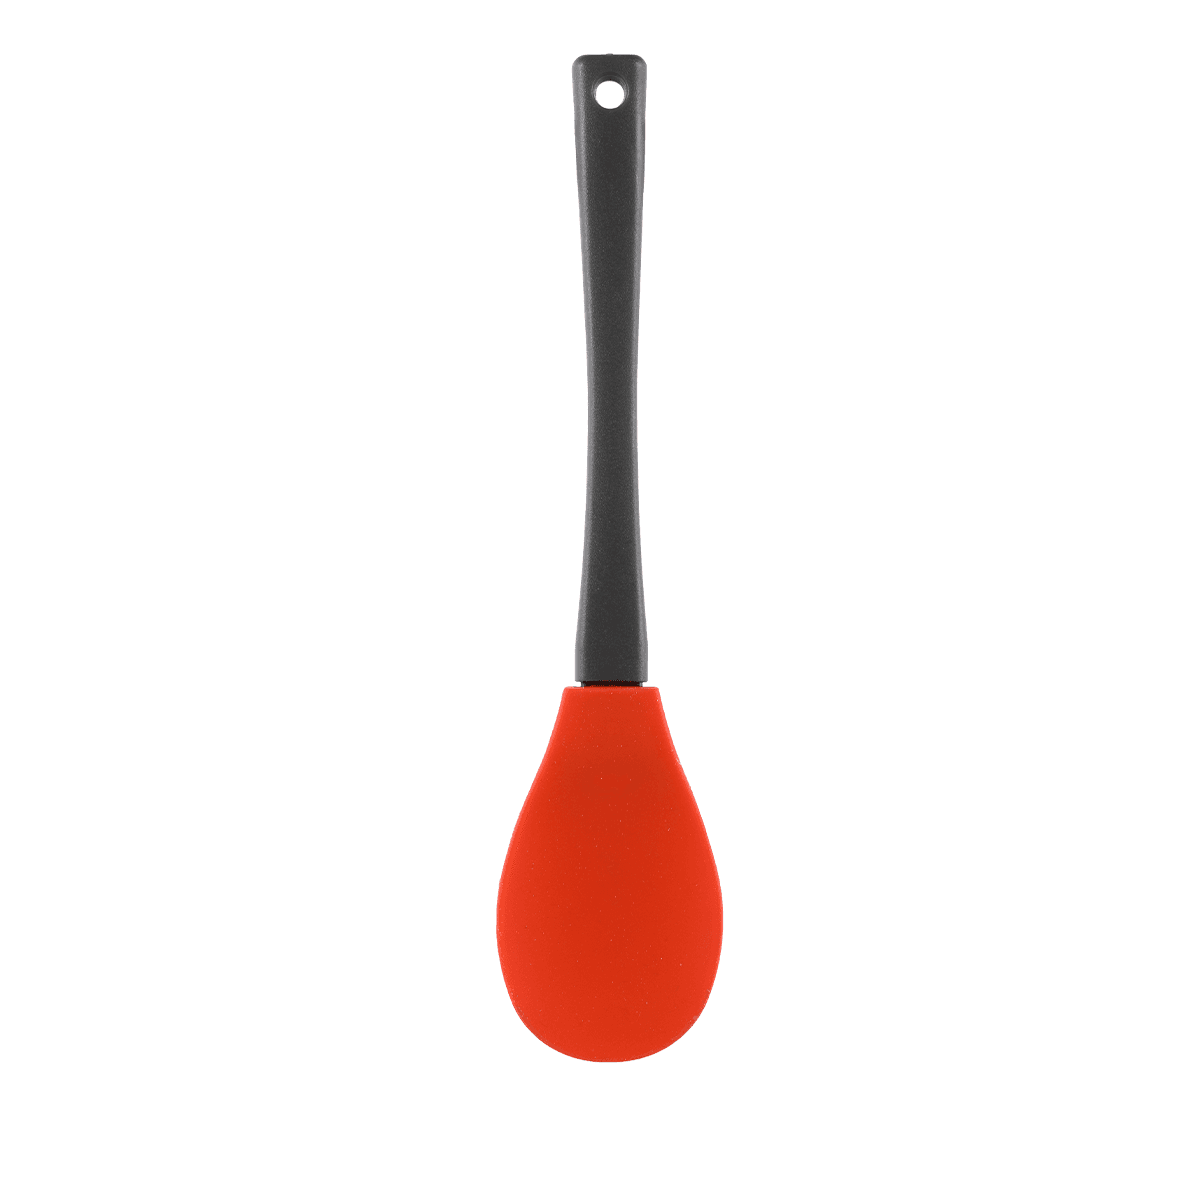 ملعقة غرف سيليكون 26 سم أسود و وبرتقالي ڤاج Vague Silicone Orange Serving Spoon with Handle Orange